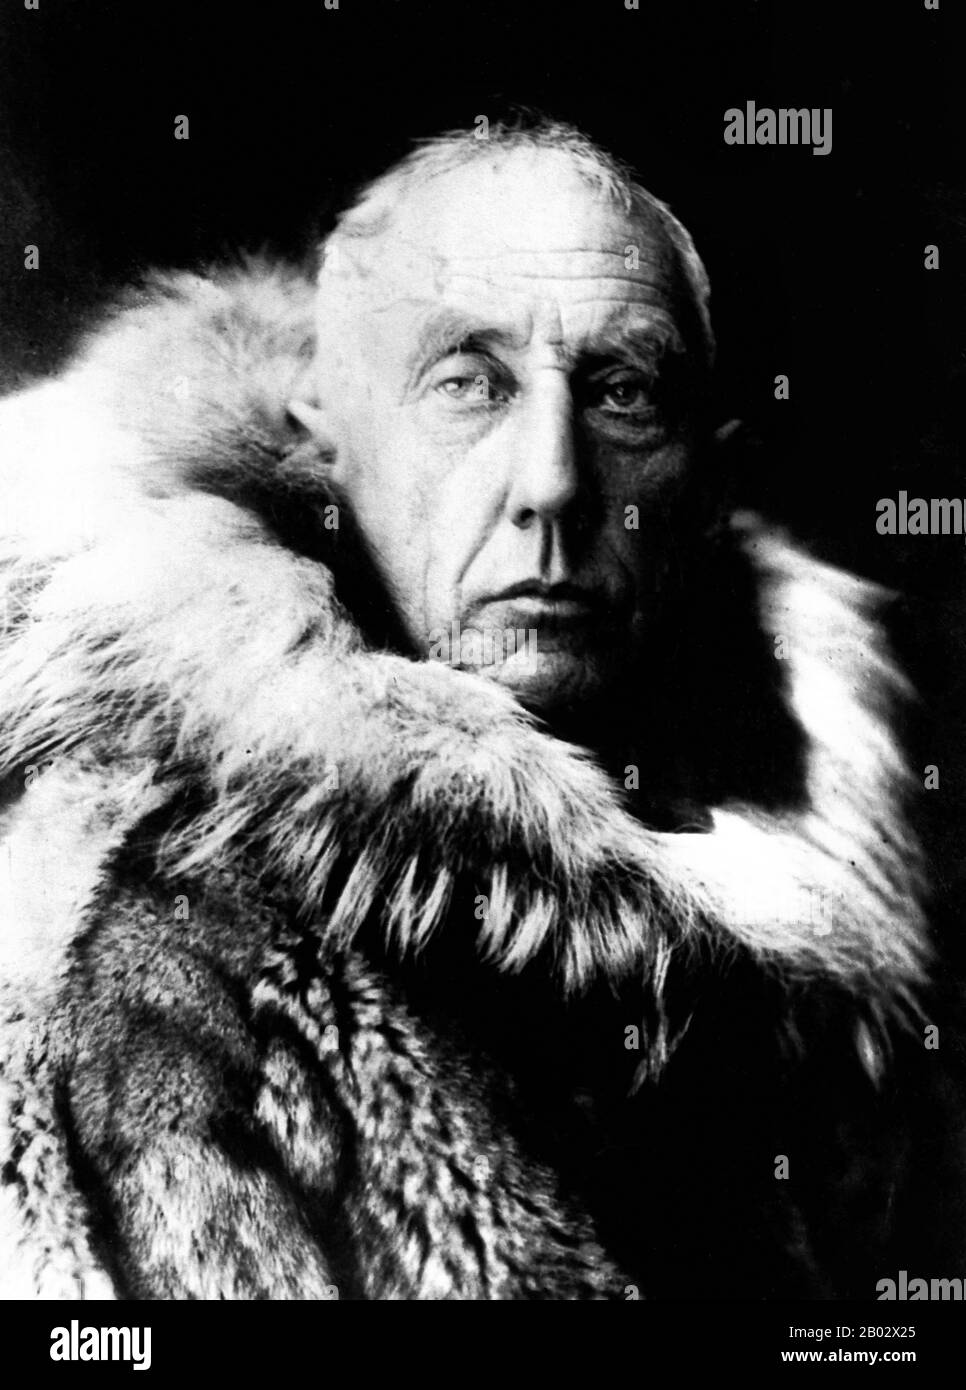 Roald Engelbregt Gravning Amundsen (16 Luglio 1872 – C. 18 giugno 1928) è stato un esploratore norvegese delle regioni polari. Guidò la spedizione antartica (1910-12) che fu la prima a raggiungere il Polo Sud, il 14 dicembre 1911. Nel 1926 fu il primo capo della spedizione ad essere riconosciuto senza controversie come arrivato al Polo Nord. È anche noto come avere la prima spedizione per attraversare il passaggio nord-ovest (1903-06) nell'Artico. Scomparve nel giugno 1928 nell'Artico mentre partecipa ad una missione di salvataggio in aereo. Amundsen era tra i principali leader della spedizione, tra cui Douglas Mawson, Rober Foto Stock